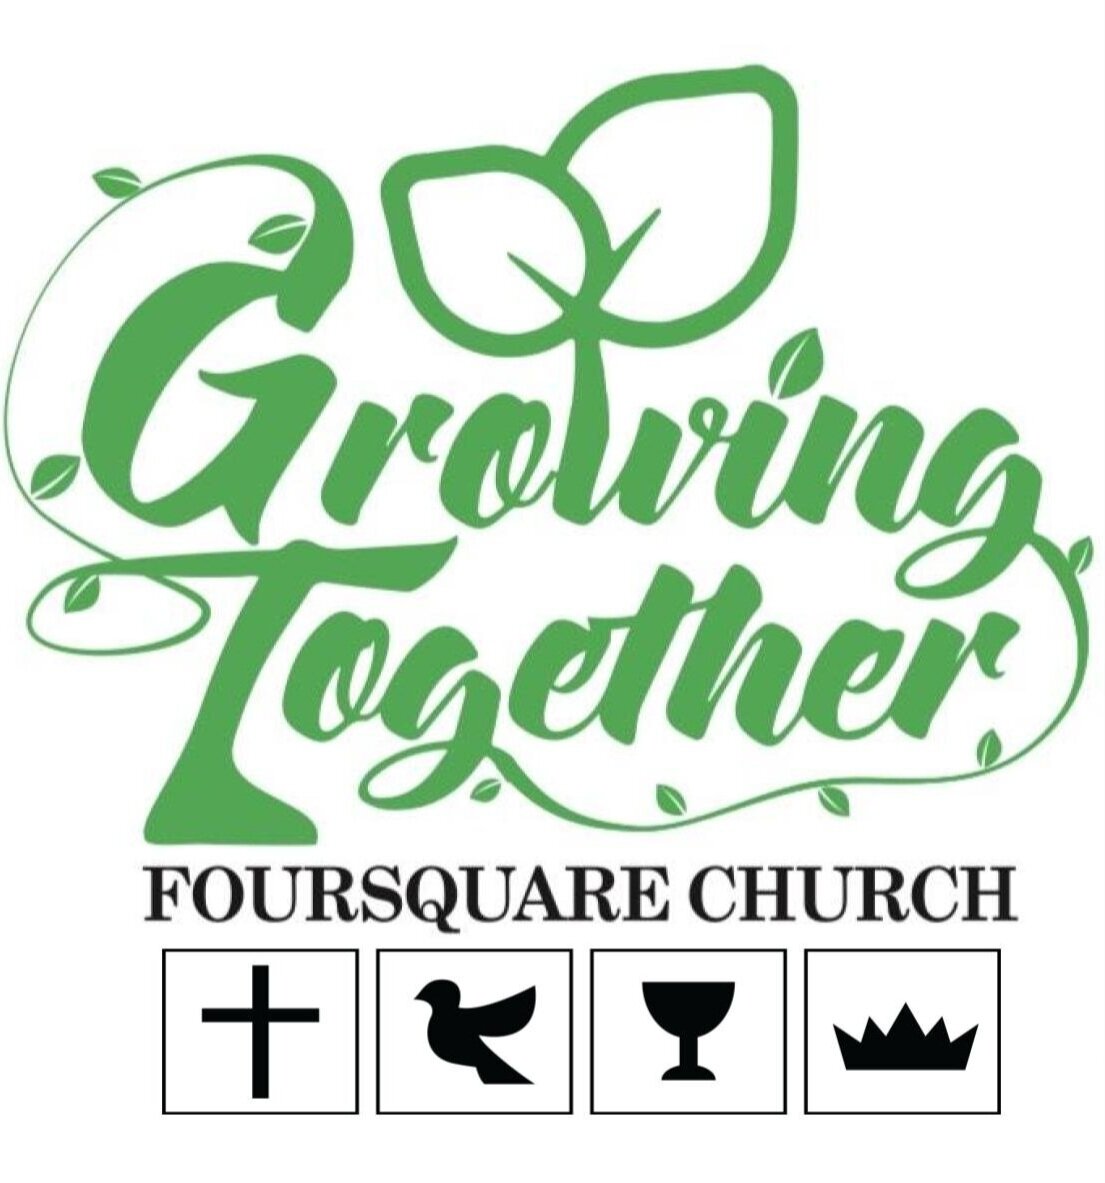 The Foursquare Church